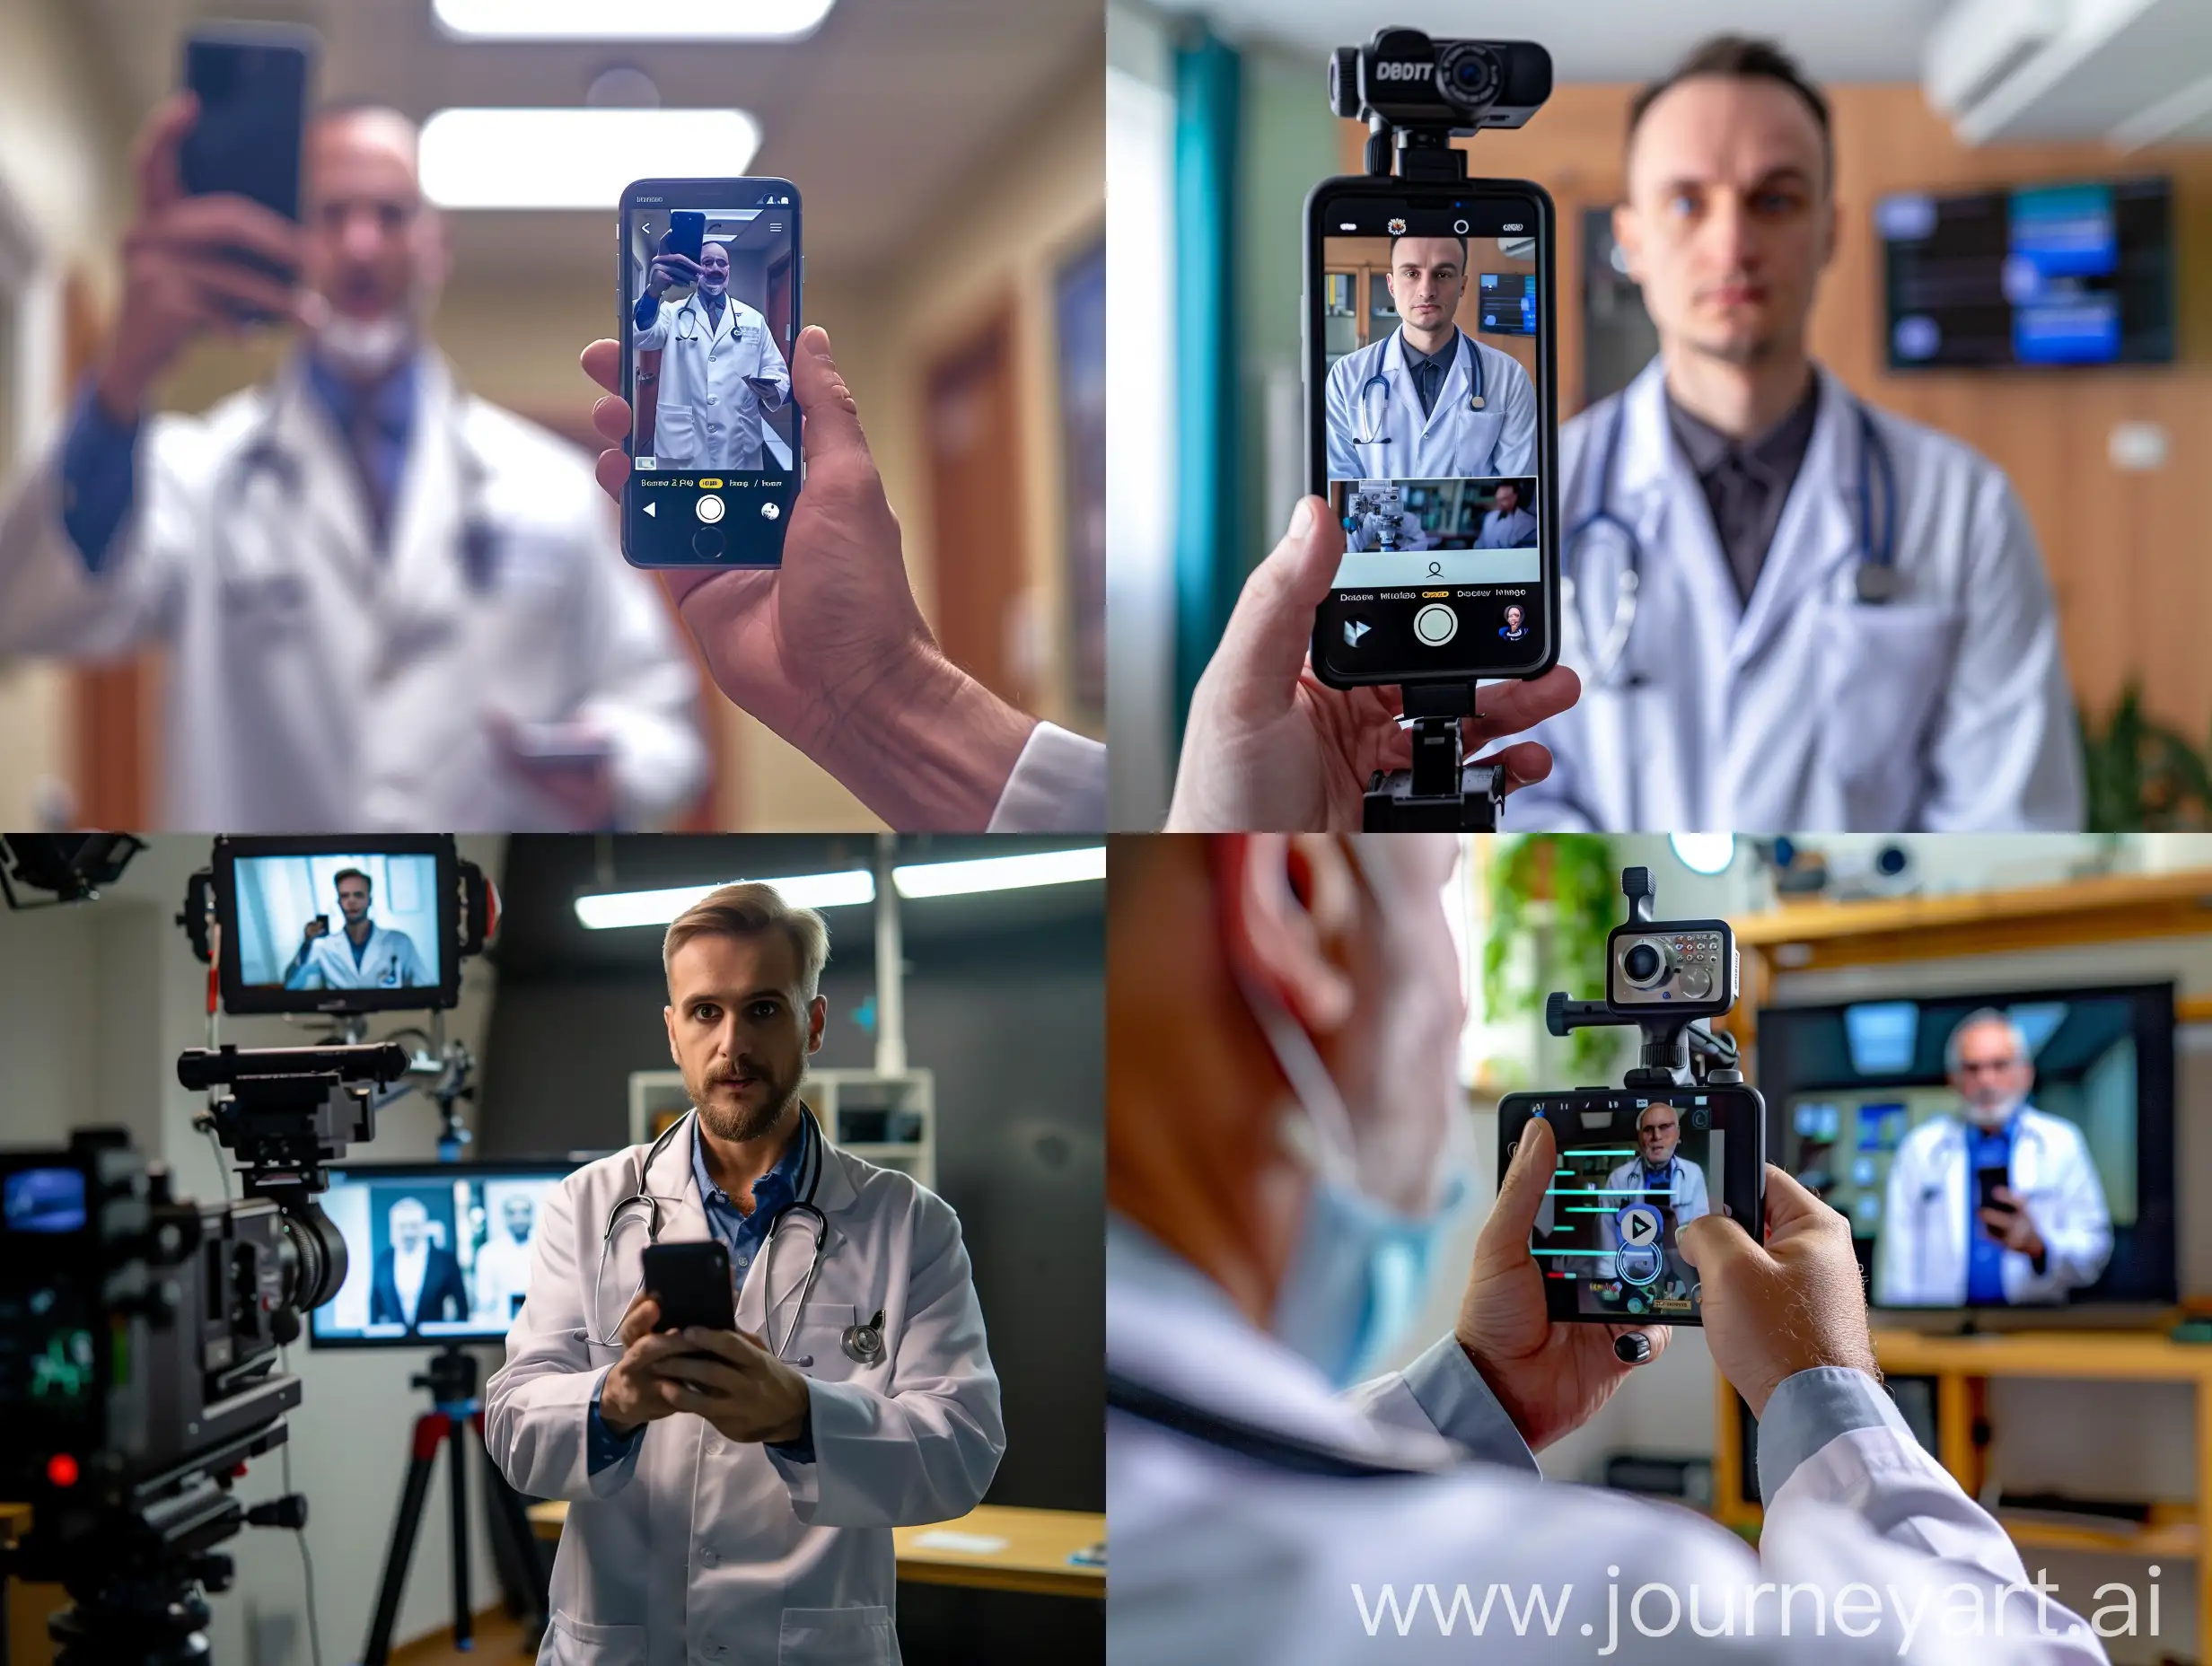 врач снимает на телефон короткое рекламное видео о себе для своего блога, фотореализм, детали
